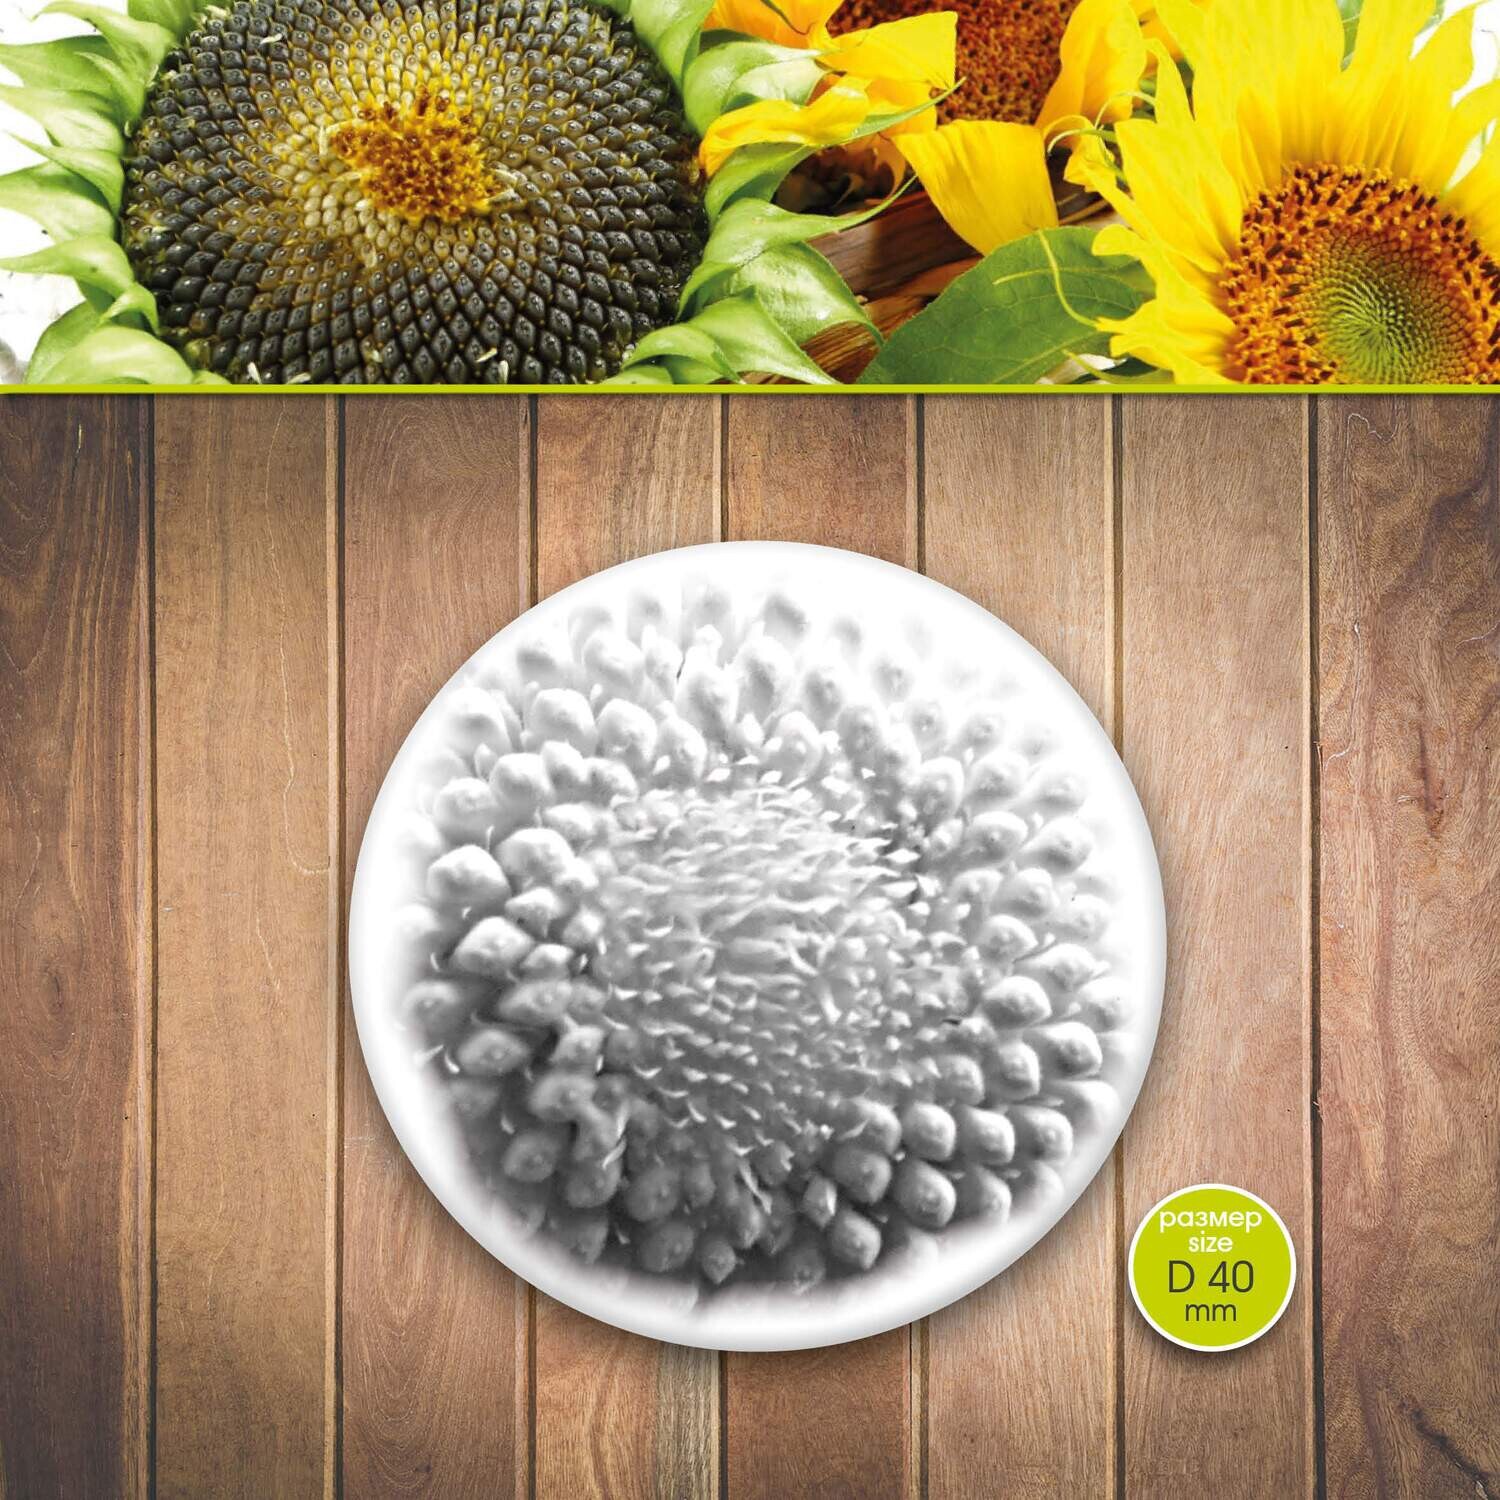 Sunflower D 40 mm